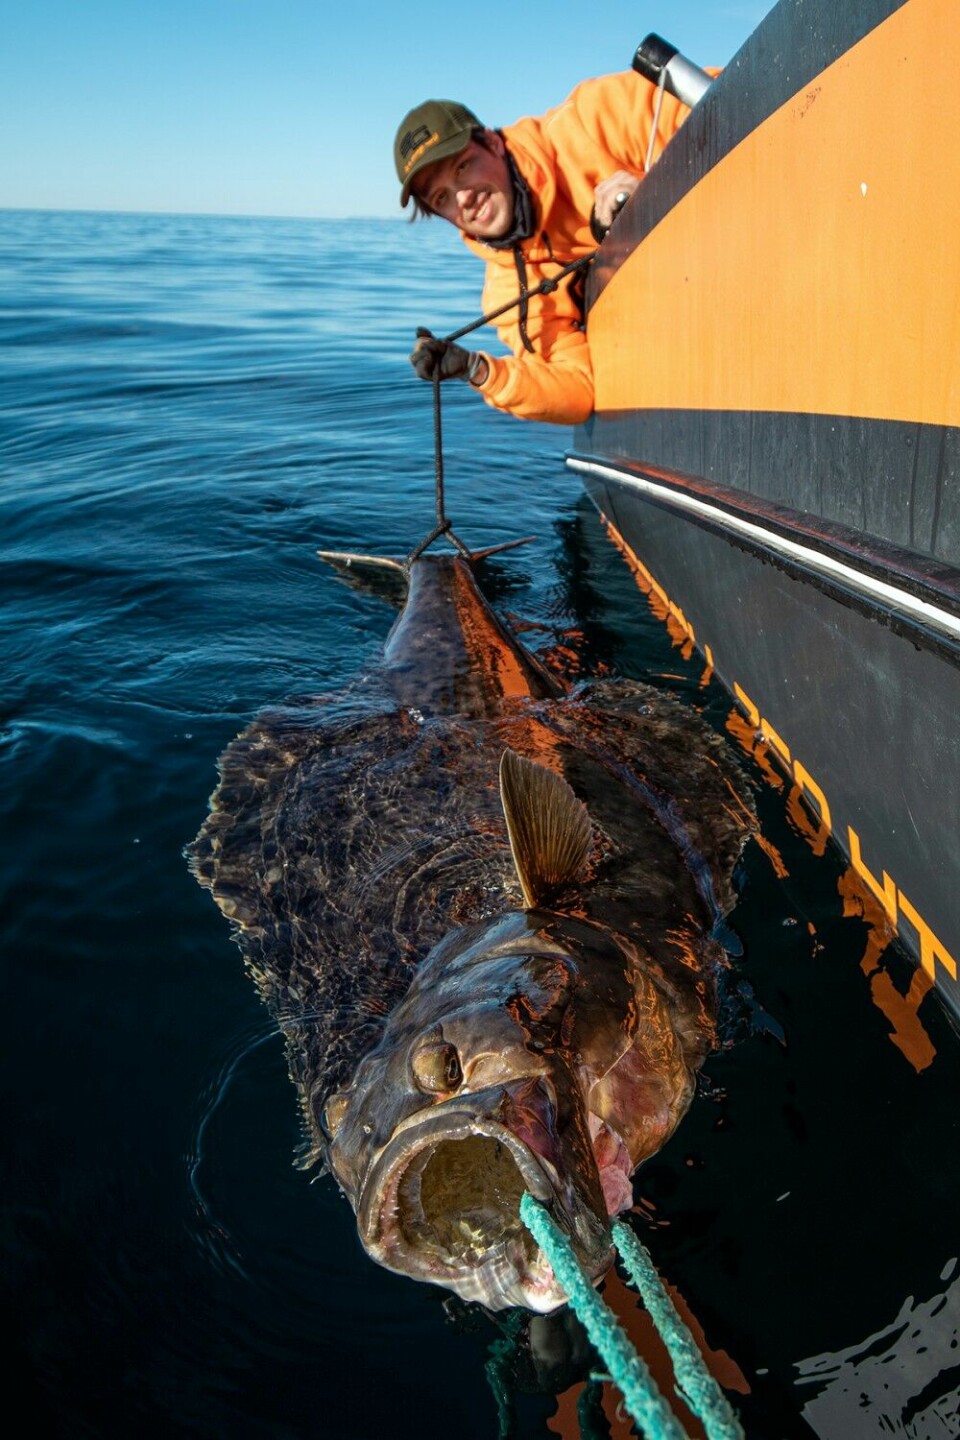 De norske fiskeguidene i Nord-Norge har vært med på å forme det nye kveitefisket. Her er fiskeguide Jørgen Zwilgmeyer. Kveita fikk friheten tilbake etter at bildet var tatt.